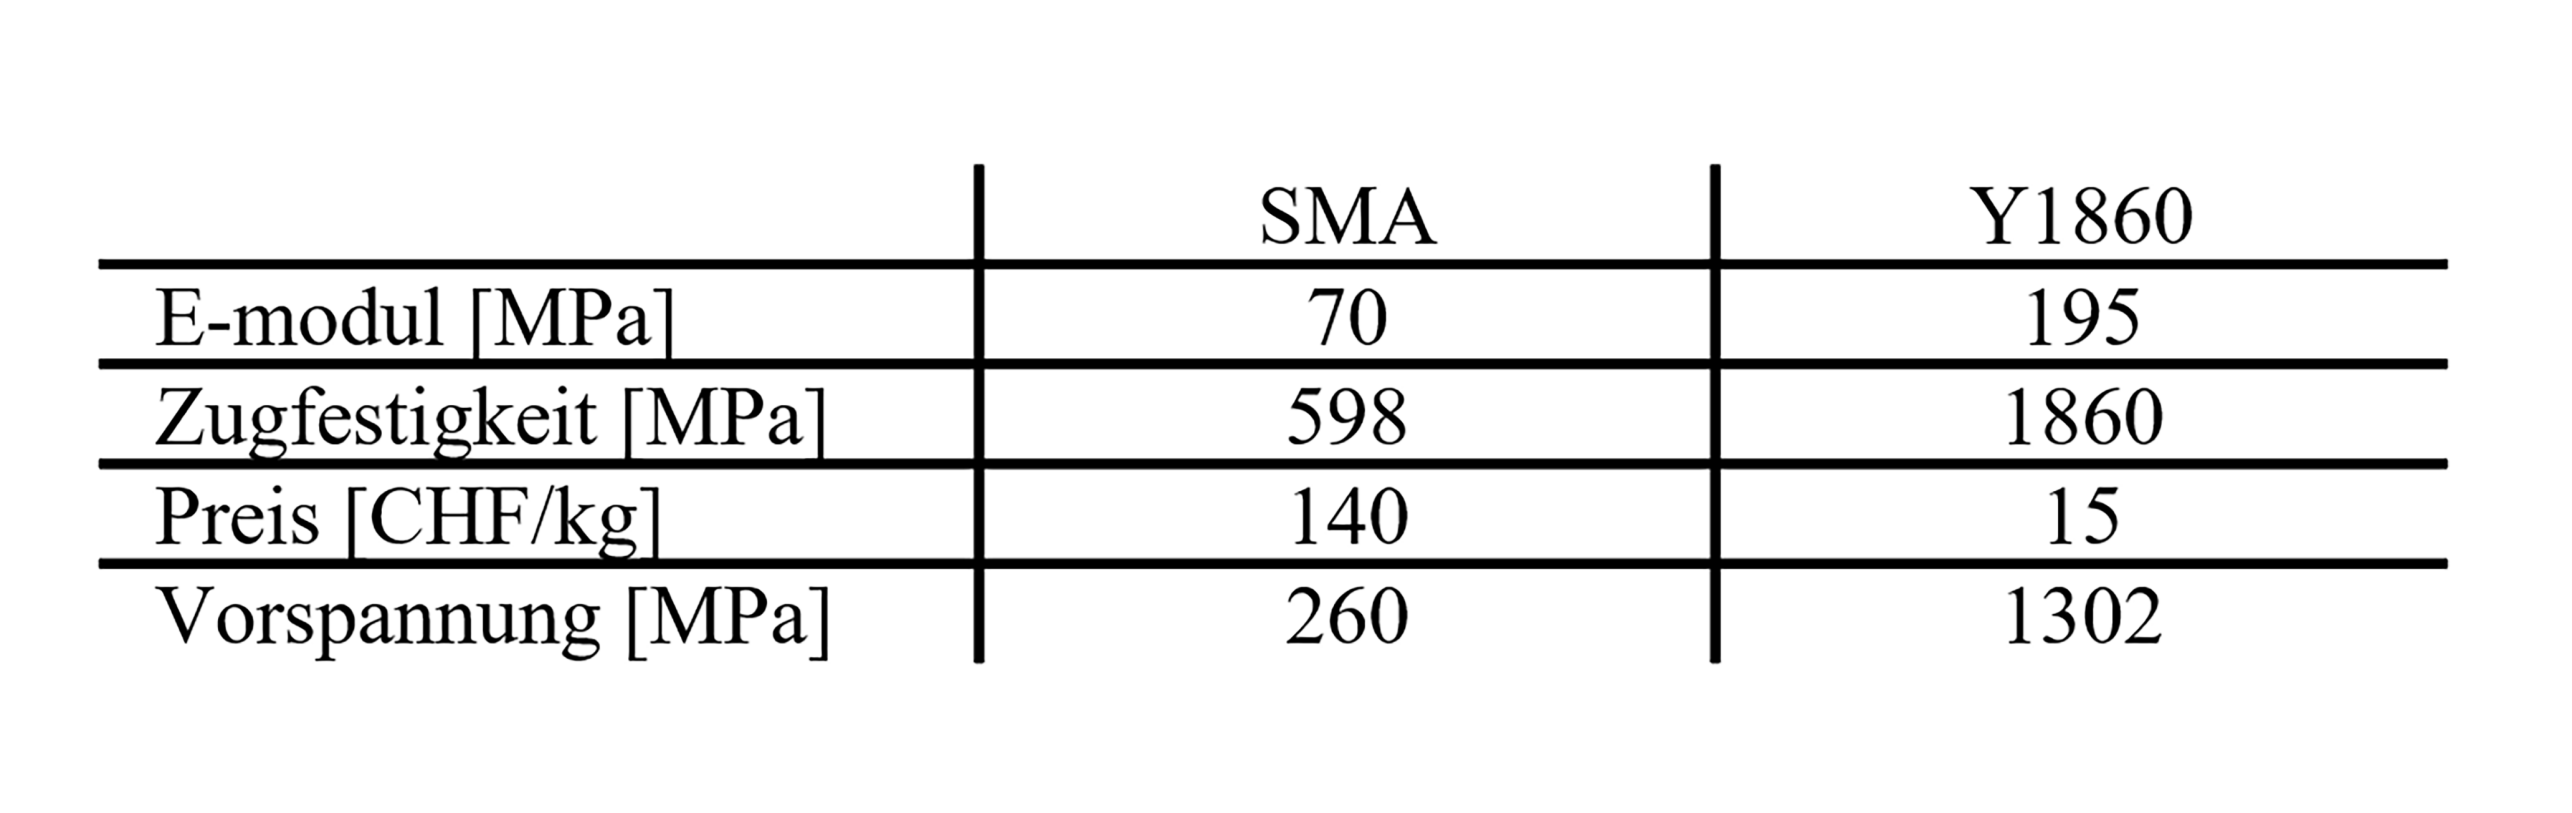 Materialeigenschaften und Kosten  für SMA und Y1860